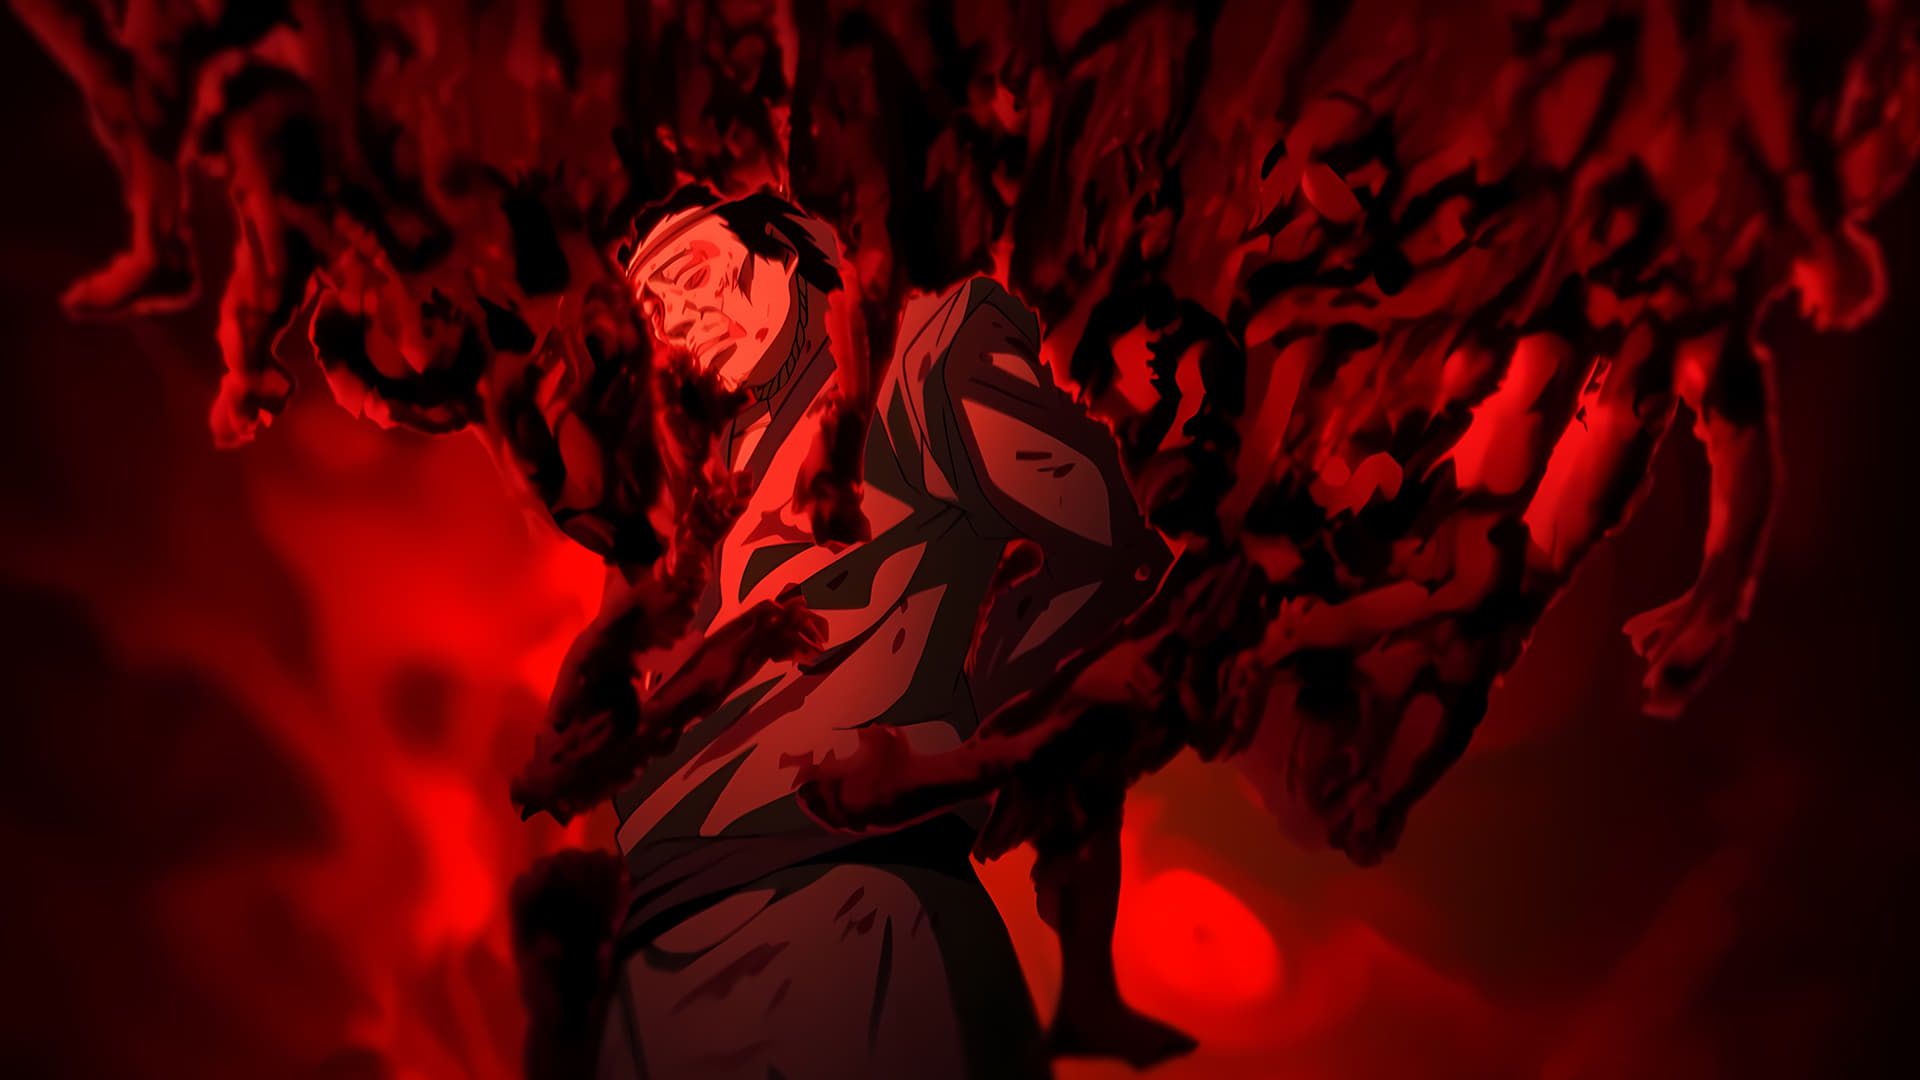 Assistir Biao Ren: Blades of the Guardians - Episódio 002 Online em HD -  AnimesROLL